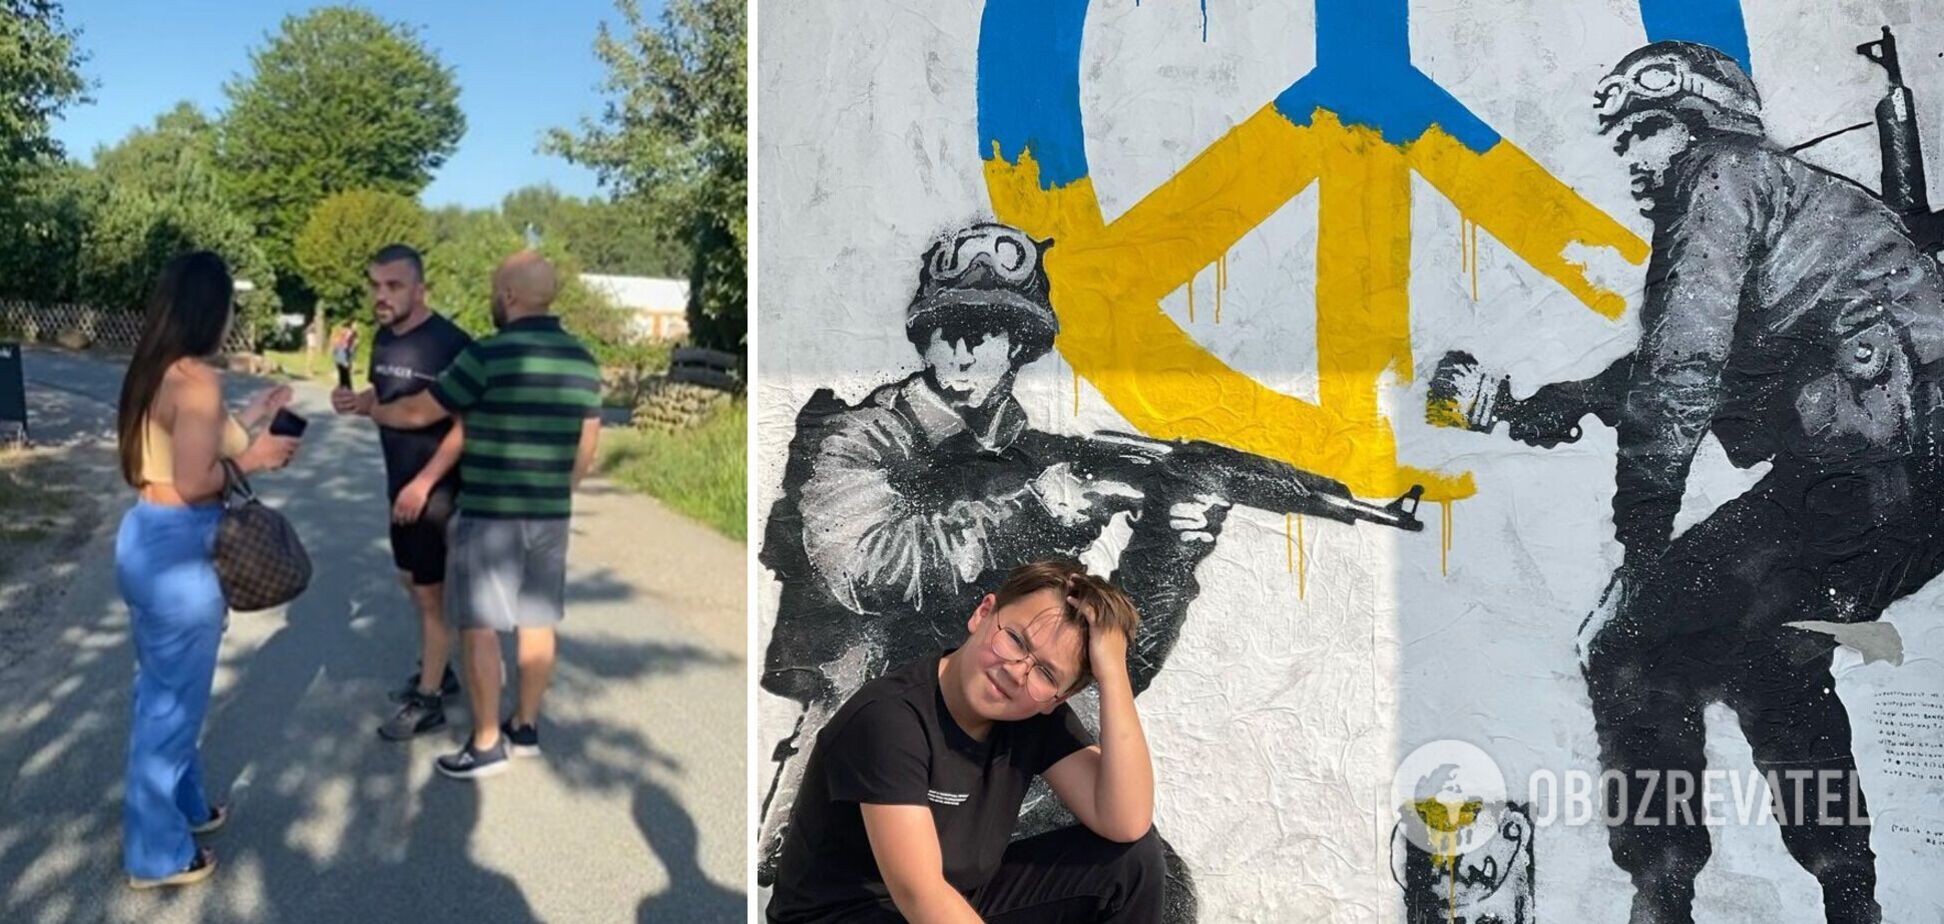 Ведущая Анна Олицкая показала новое видео с россиянами в Германии, напавшими на нее и сына из-за 'Слава Украине!'